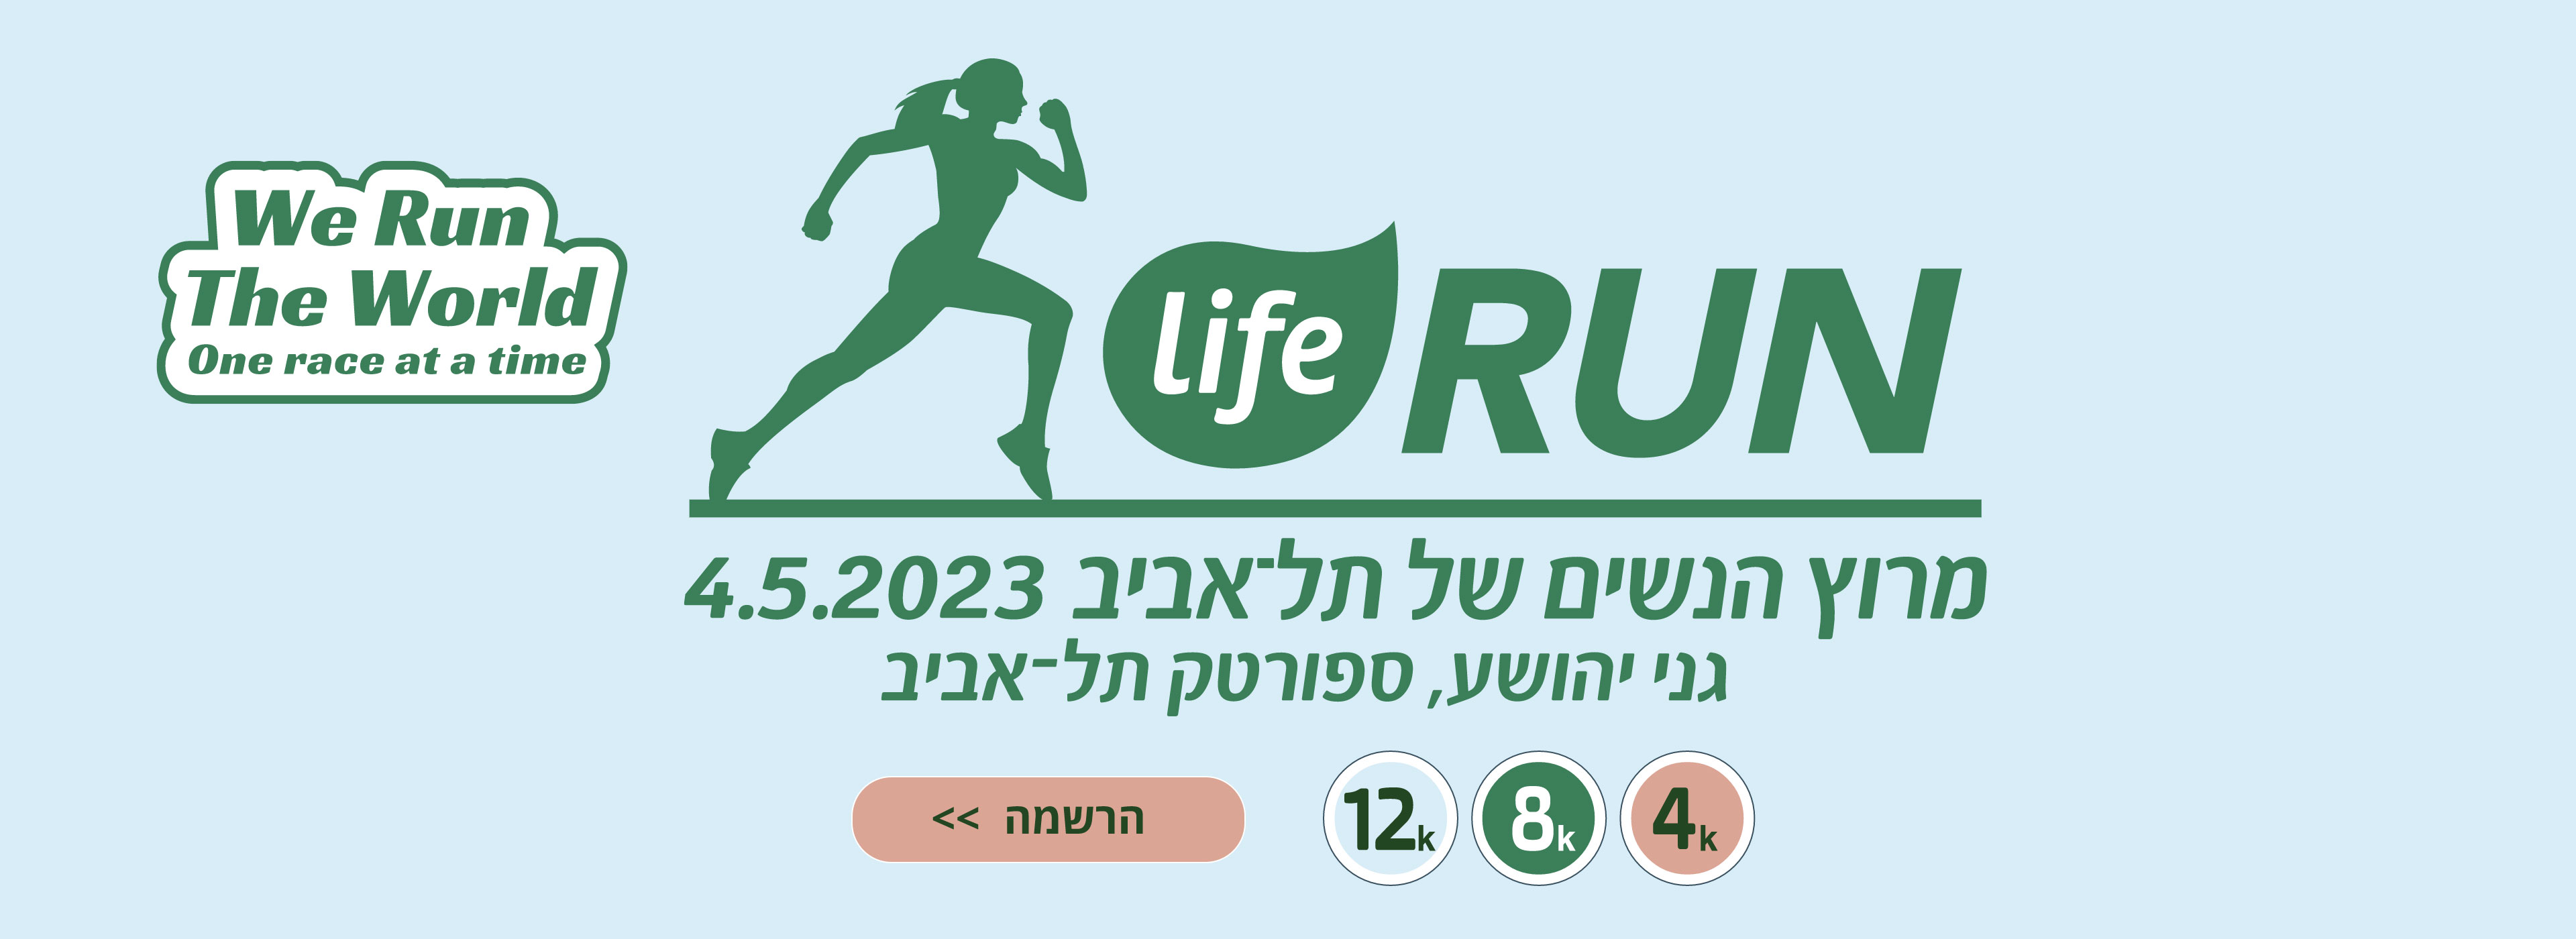 2021 מרוץ הנשים המוביל של ישראל